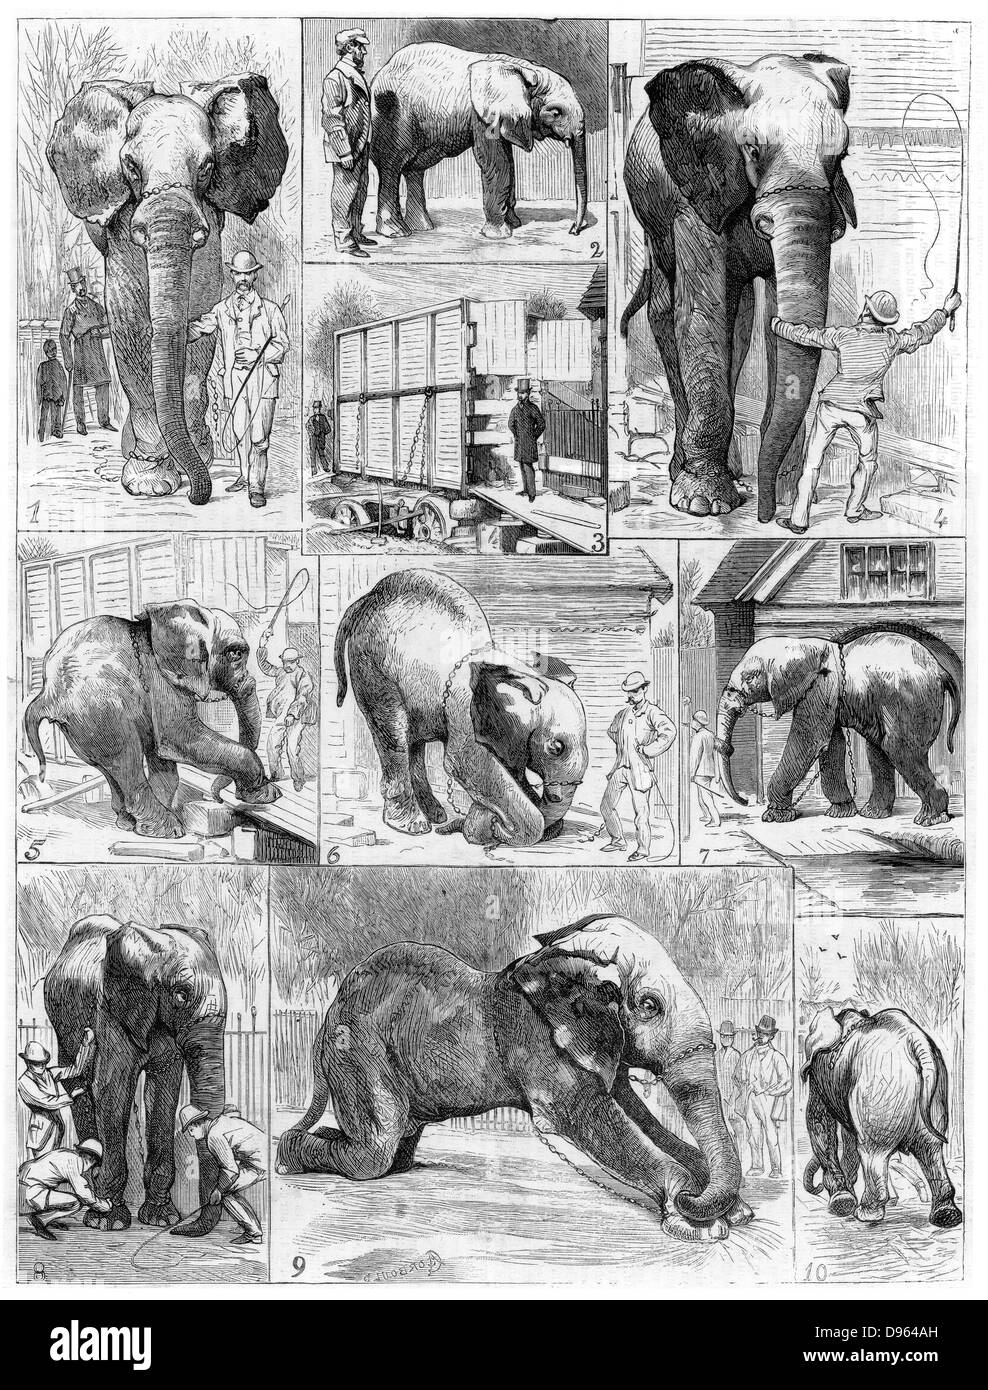 Jumbo il grande elefante africano venduti da Zoo di Londra nel 1882 per il mattatore americano Phineas Taylor Barnum (1810-1891) per il suo circo che divenne noto come il "più grande spettacolo sulla terra". Difficoltà incontrate nell'ottenere Jumbo a lasciare il suo alloggio. Da 'Le Voleur' (Parigi, 1882). Incisione su legno. Foto Stock